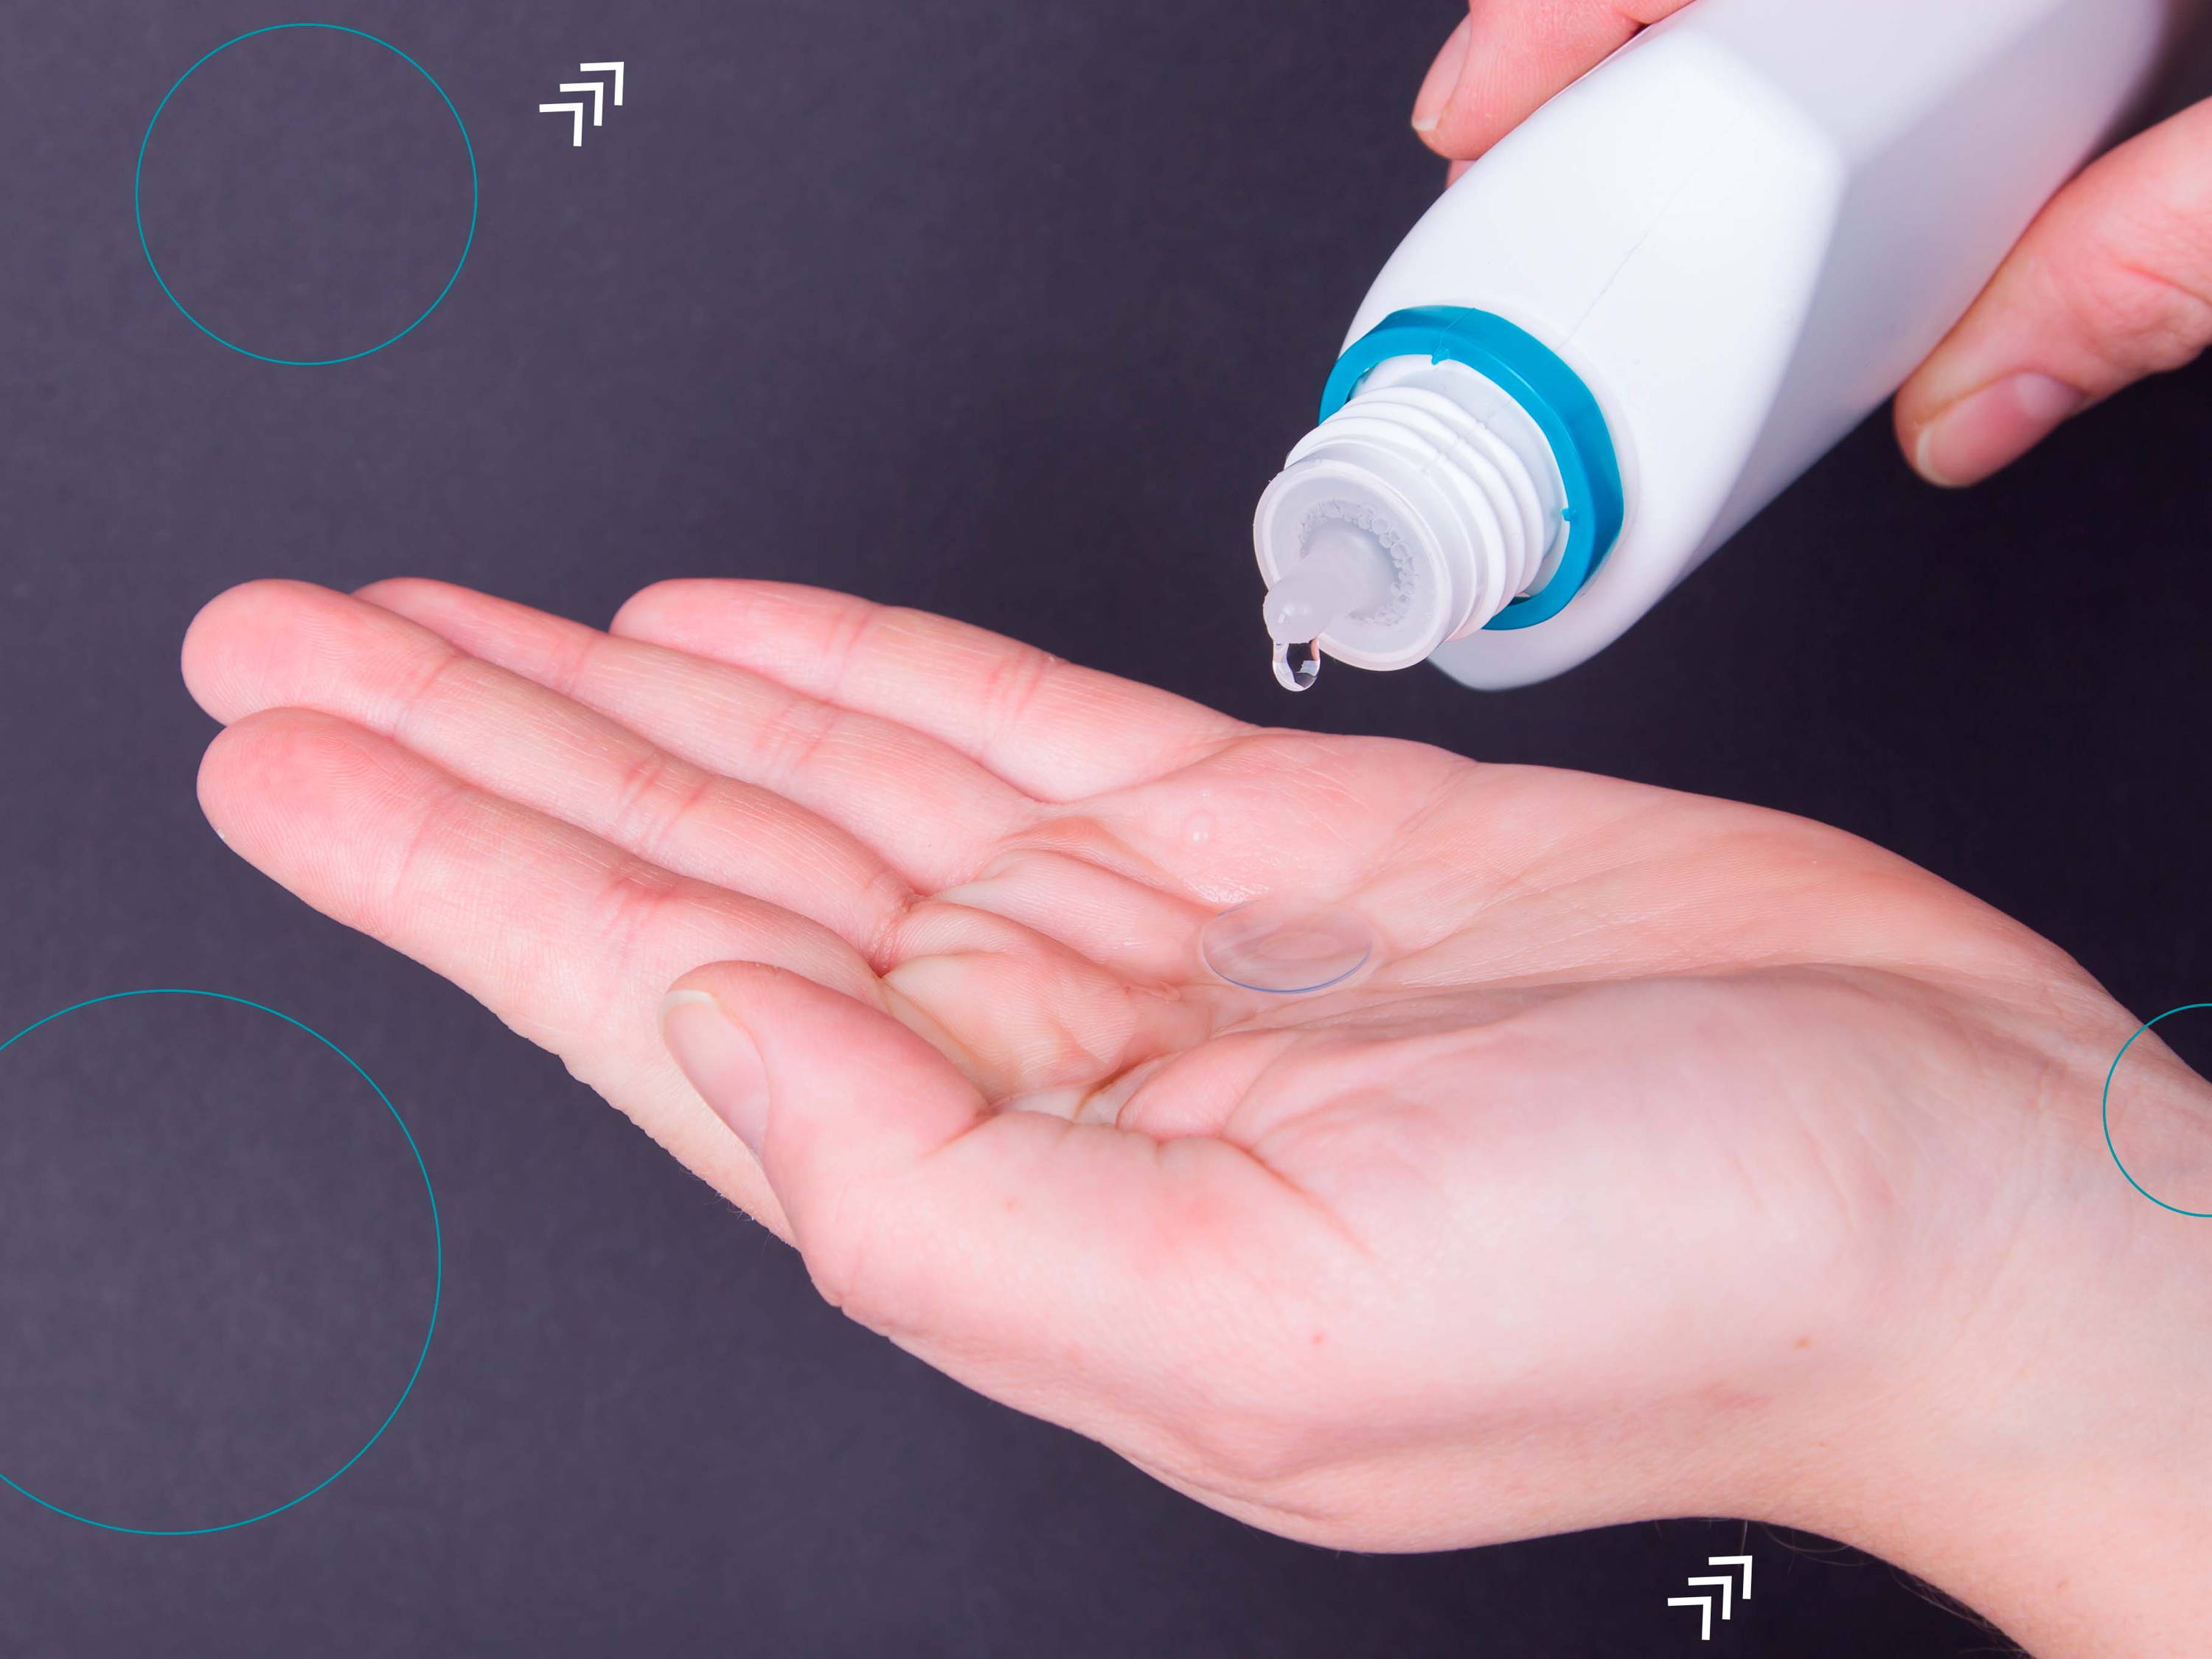 Imagen de una persona que sostiene un lente de contacto sobre la palma de la mano, mientras que le pone solución de mantenimiento para limpiarlo y guardarlo